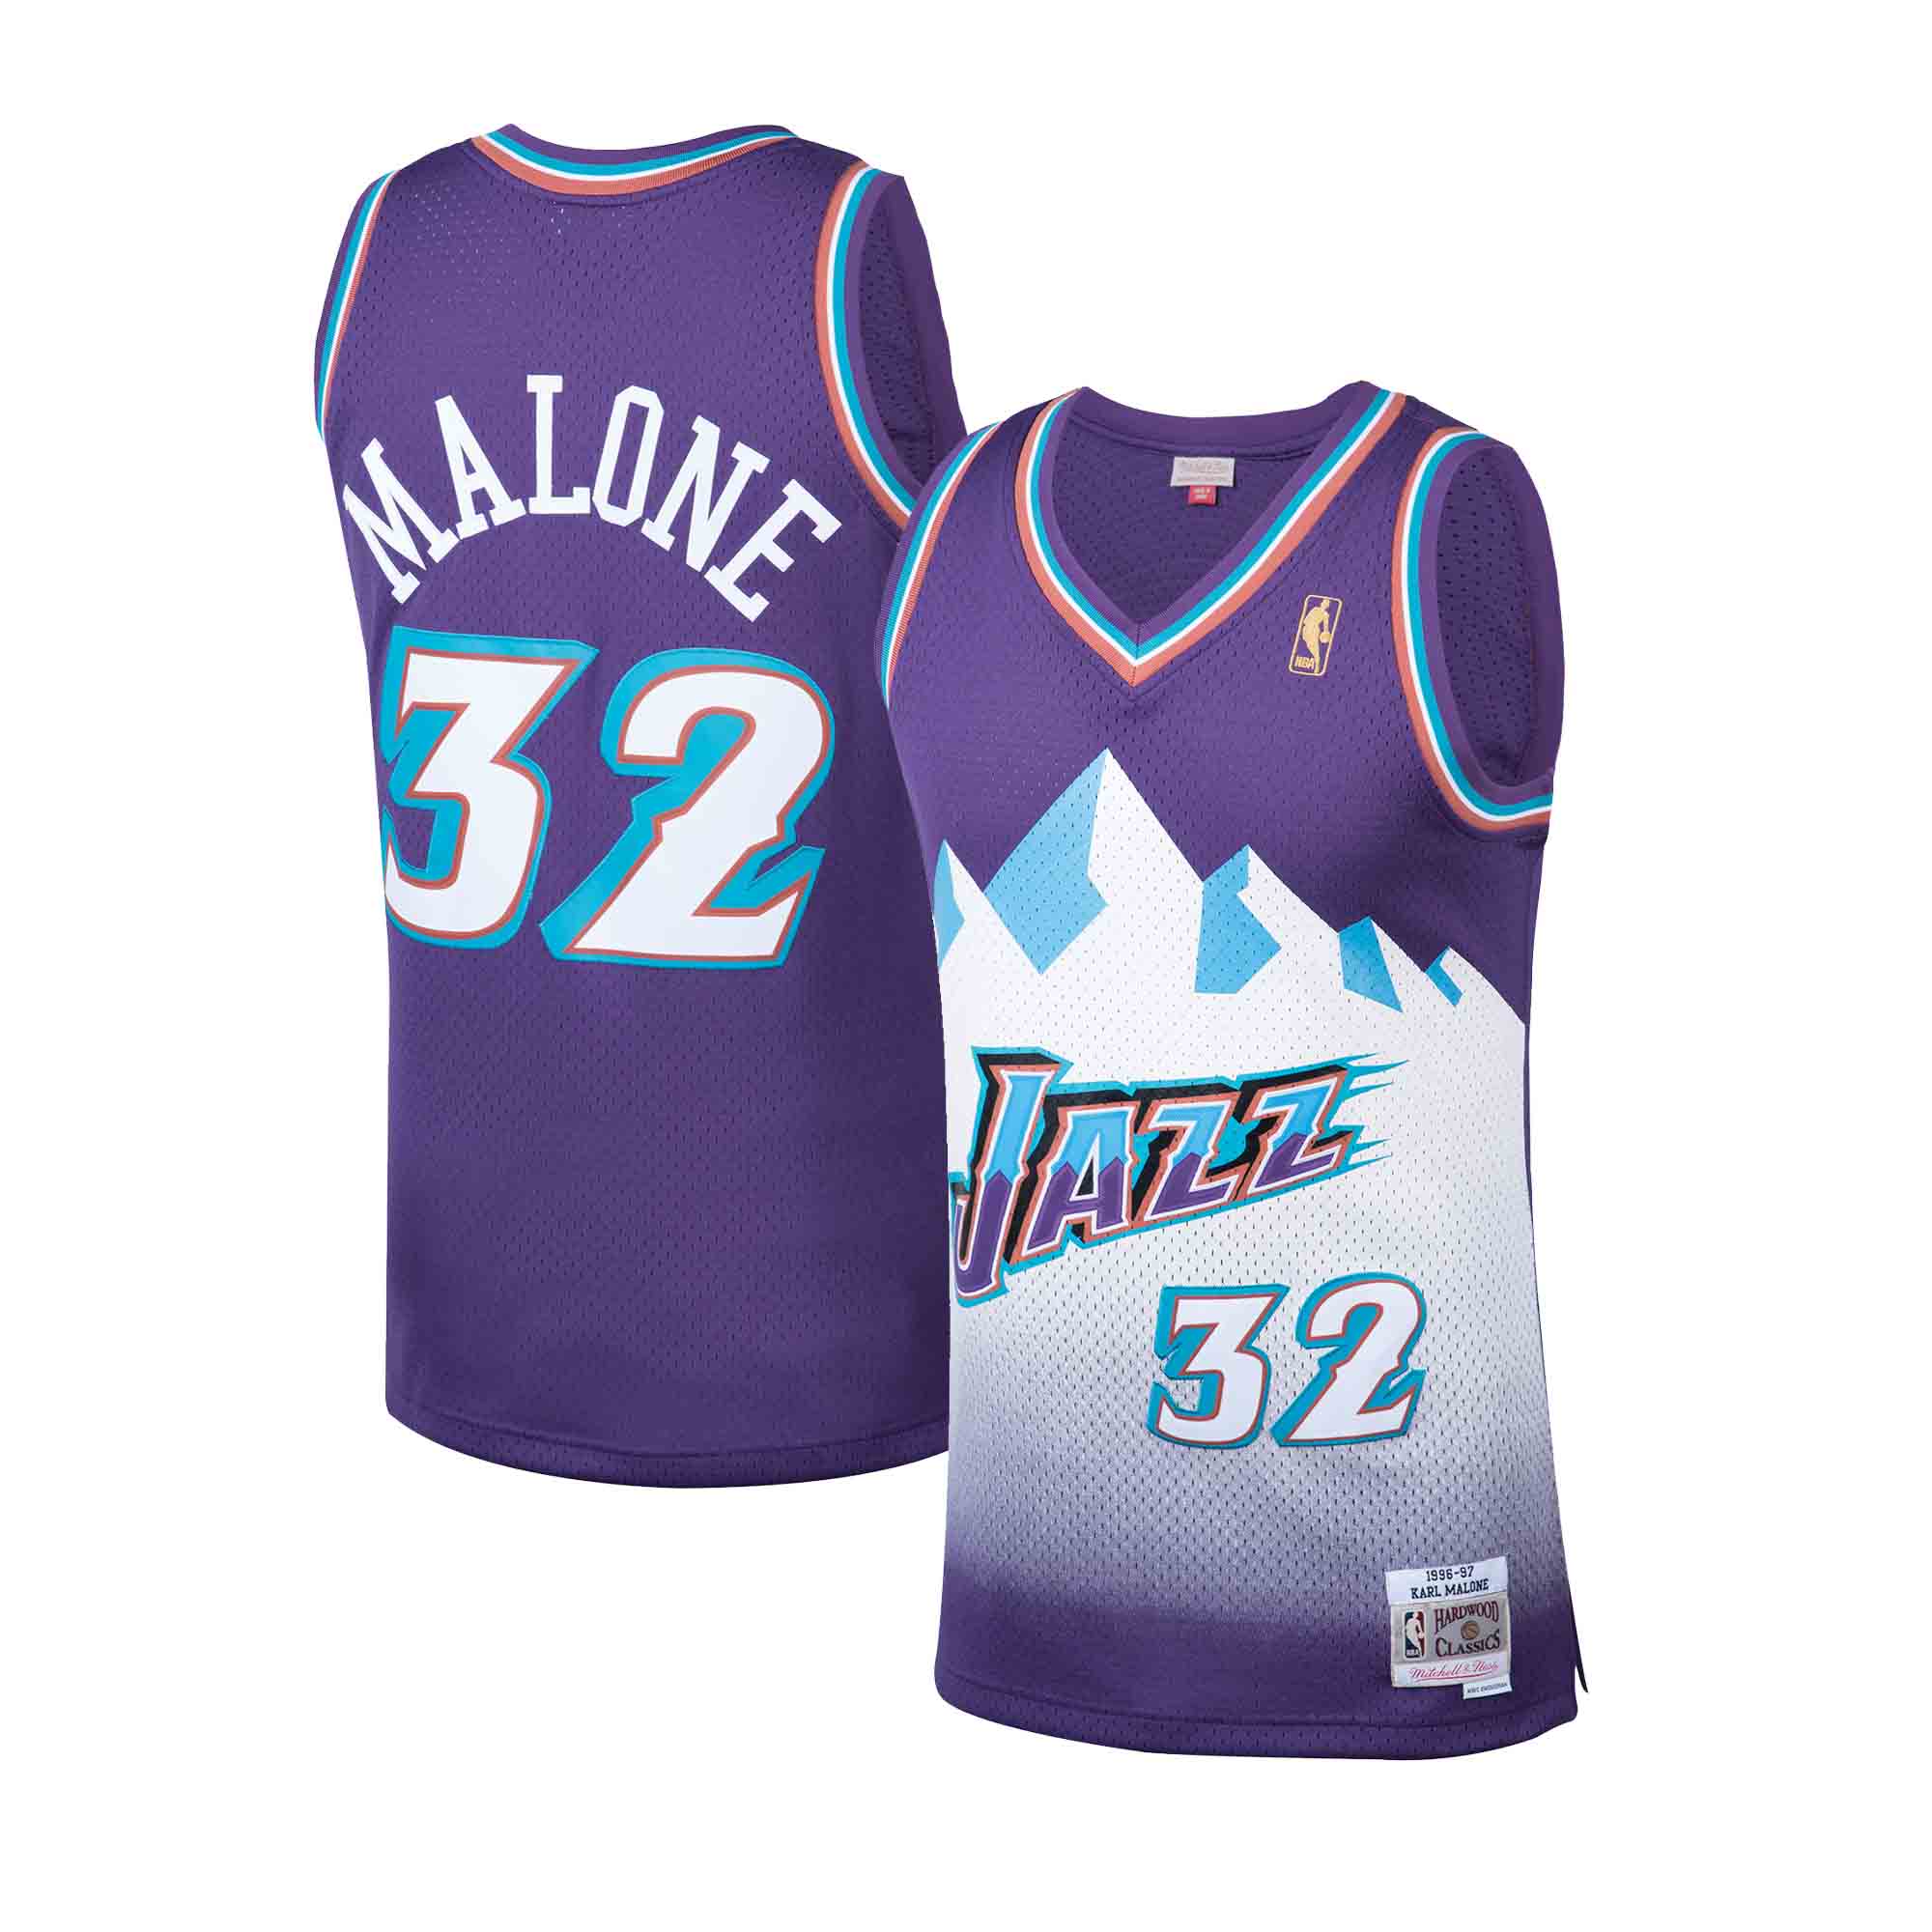 1993-94 Karl Malone Game Worn & Signed Utah Jazz Jersey.